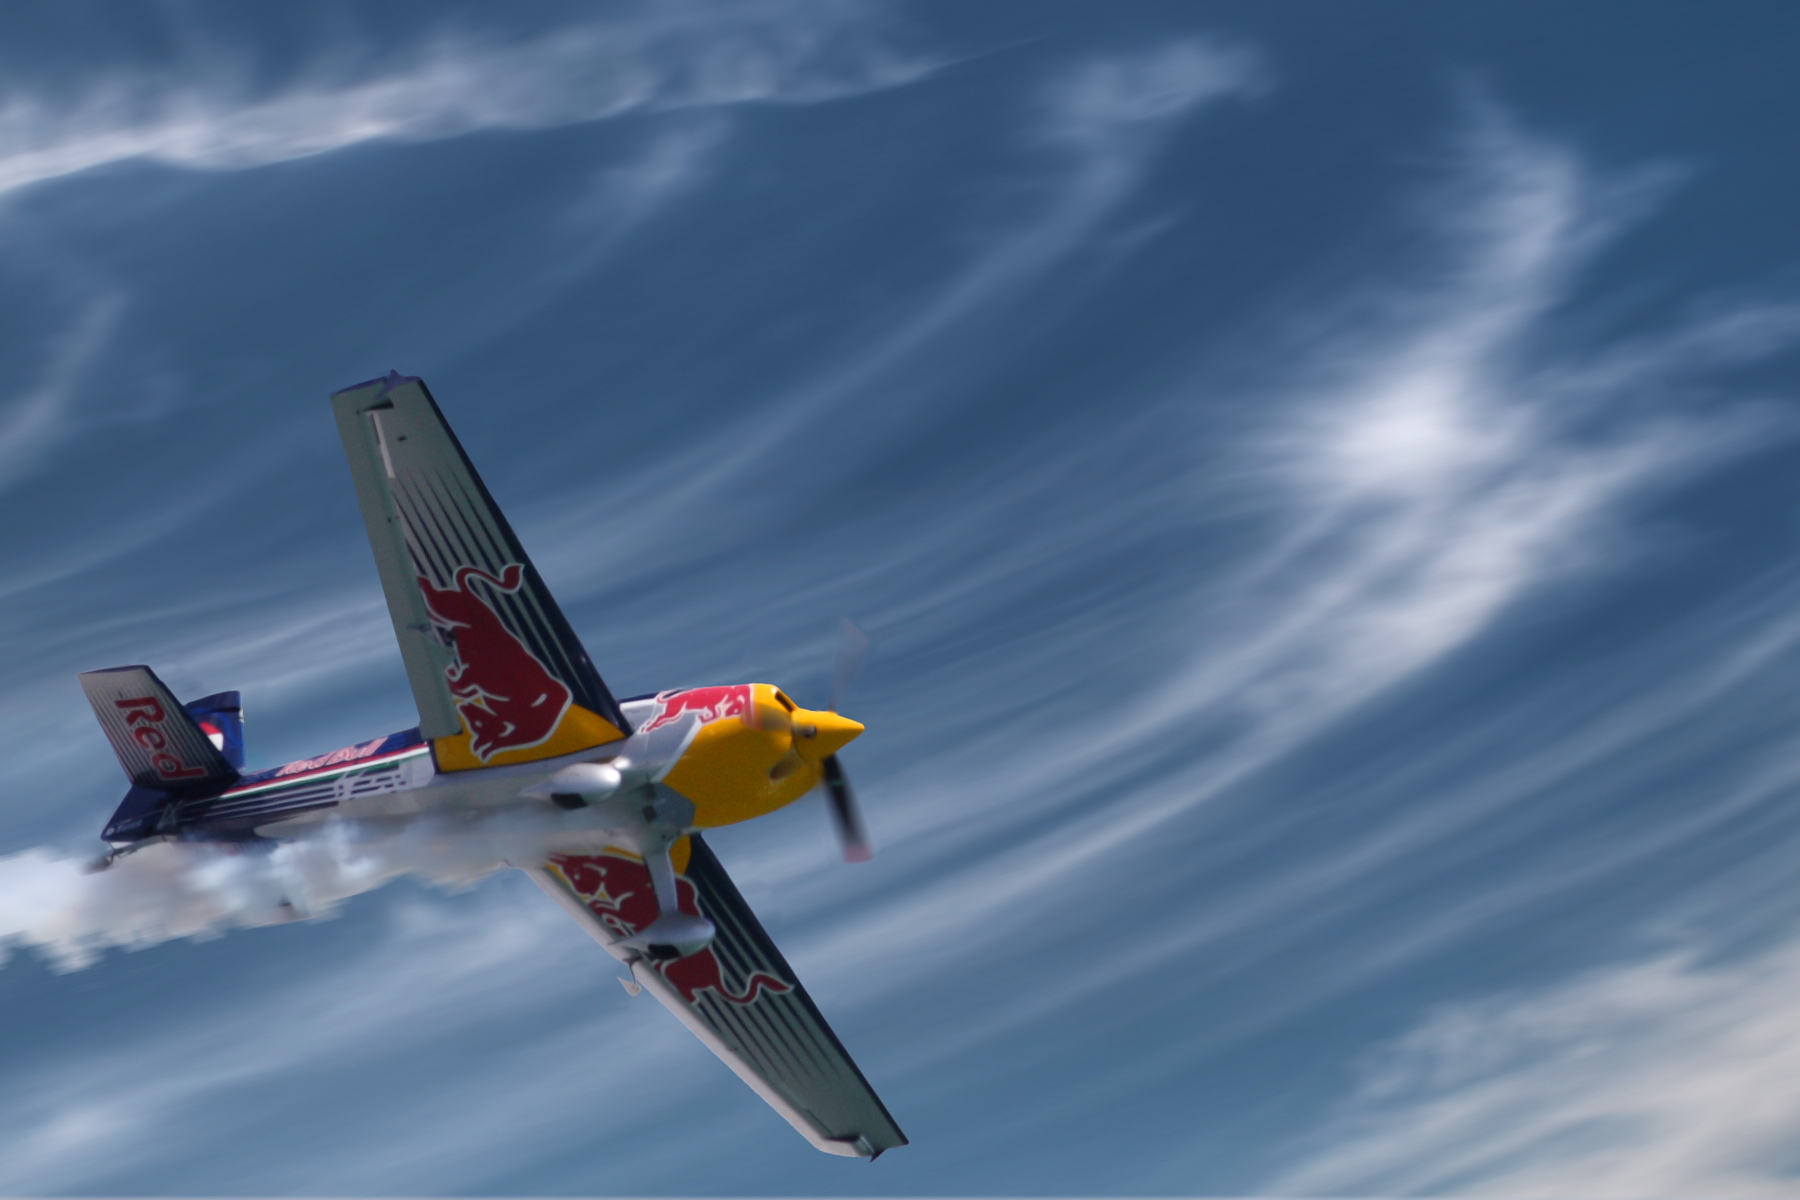 フリー画像 航空機 飛行機 プロペラ機 レッドブル エアレース ワールドシリーズ フリー素材 画像素材なら 無料 フリー写真素材のフリーフォト